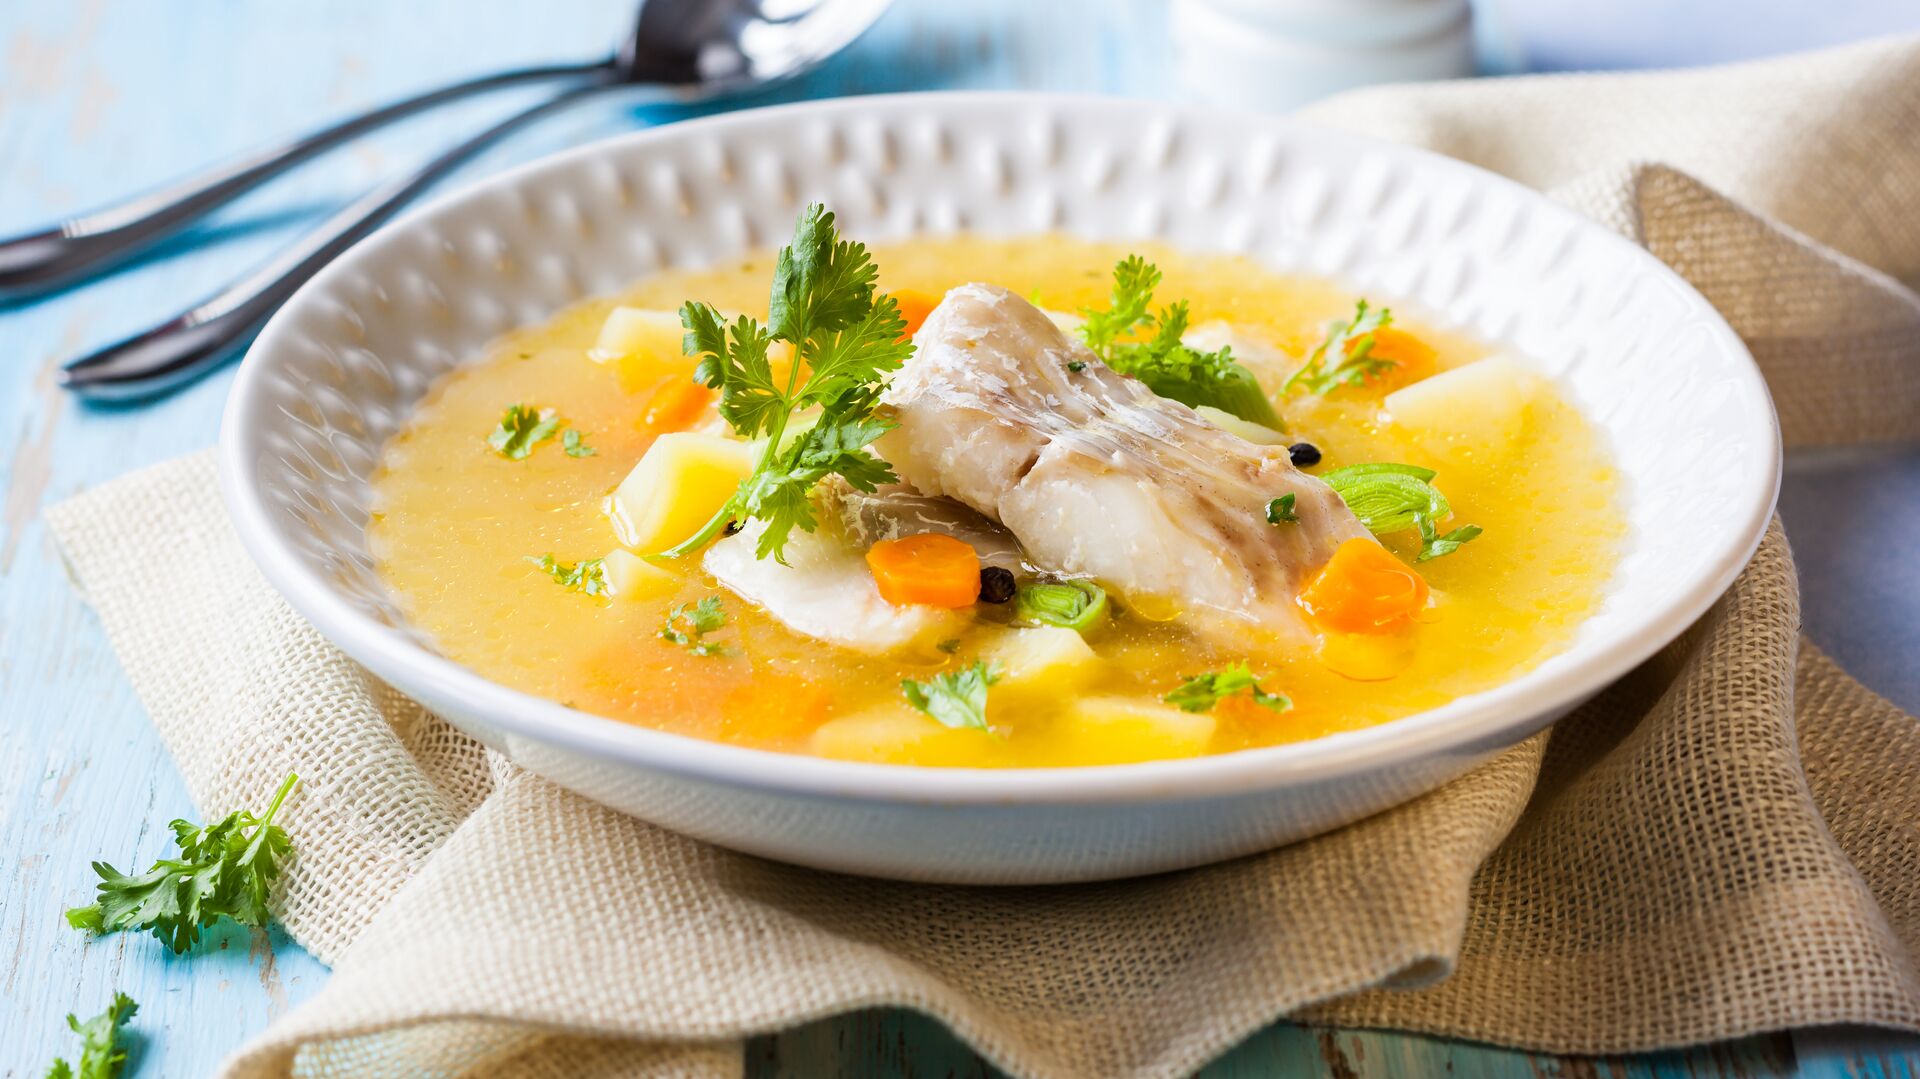 Простой суп с мясом » Вкусно и просто. Кулинарные рецепты с фото и видео